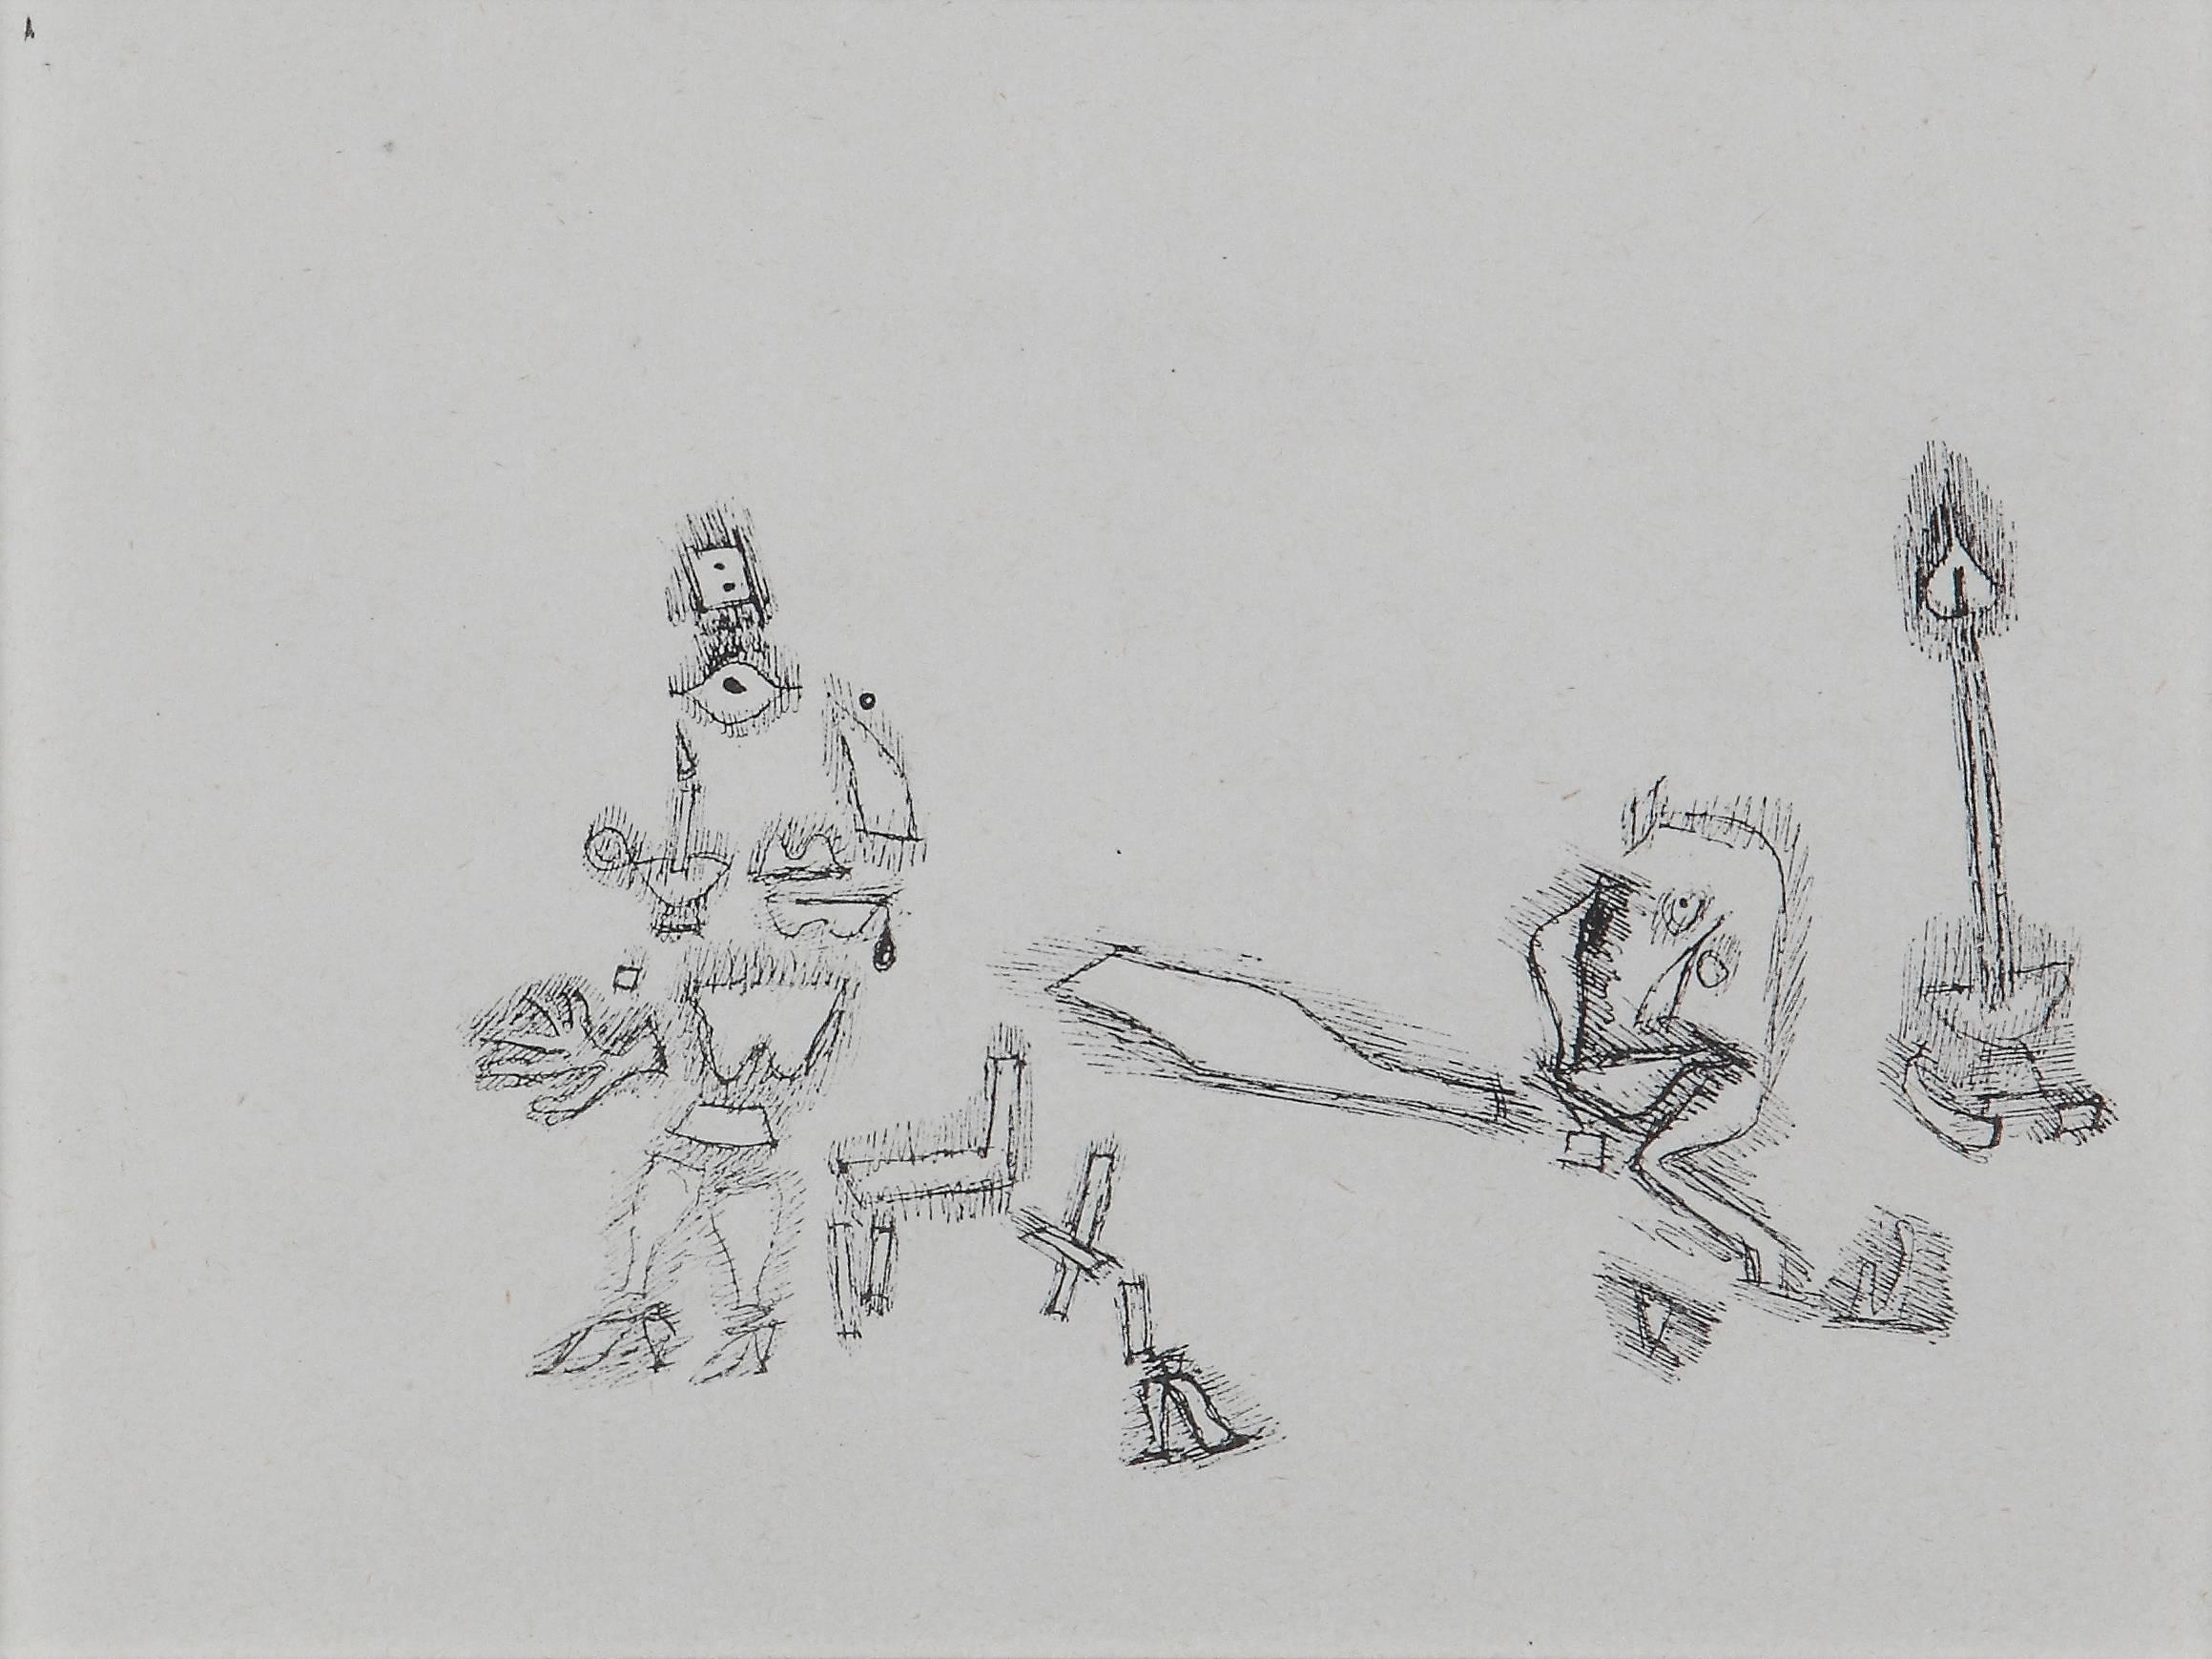 Paul Klee Etching "Möchten sollen"